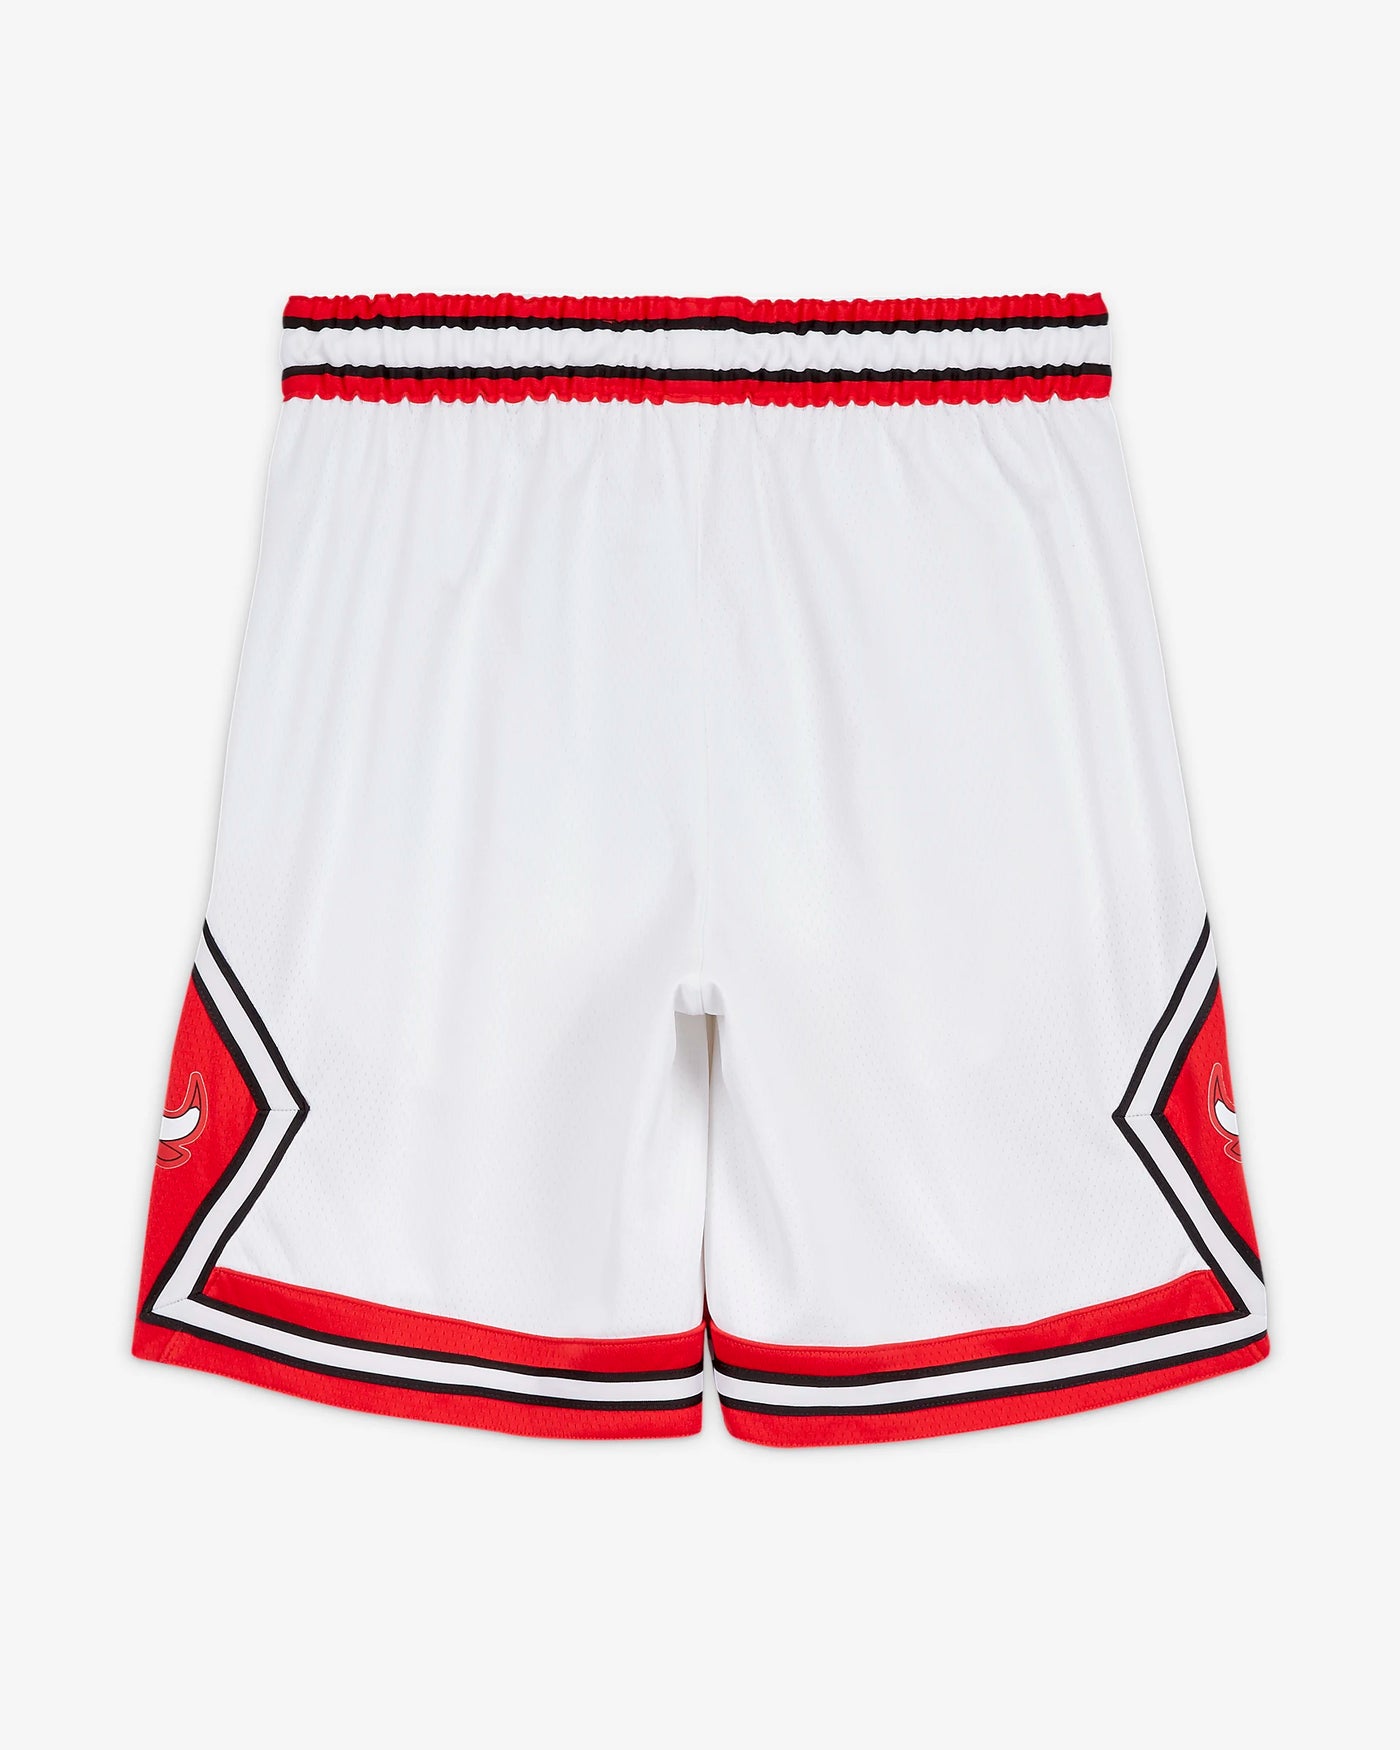 Chicago Bulls Shorts White